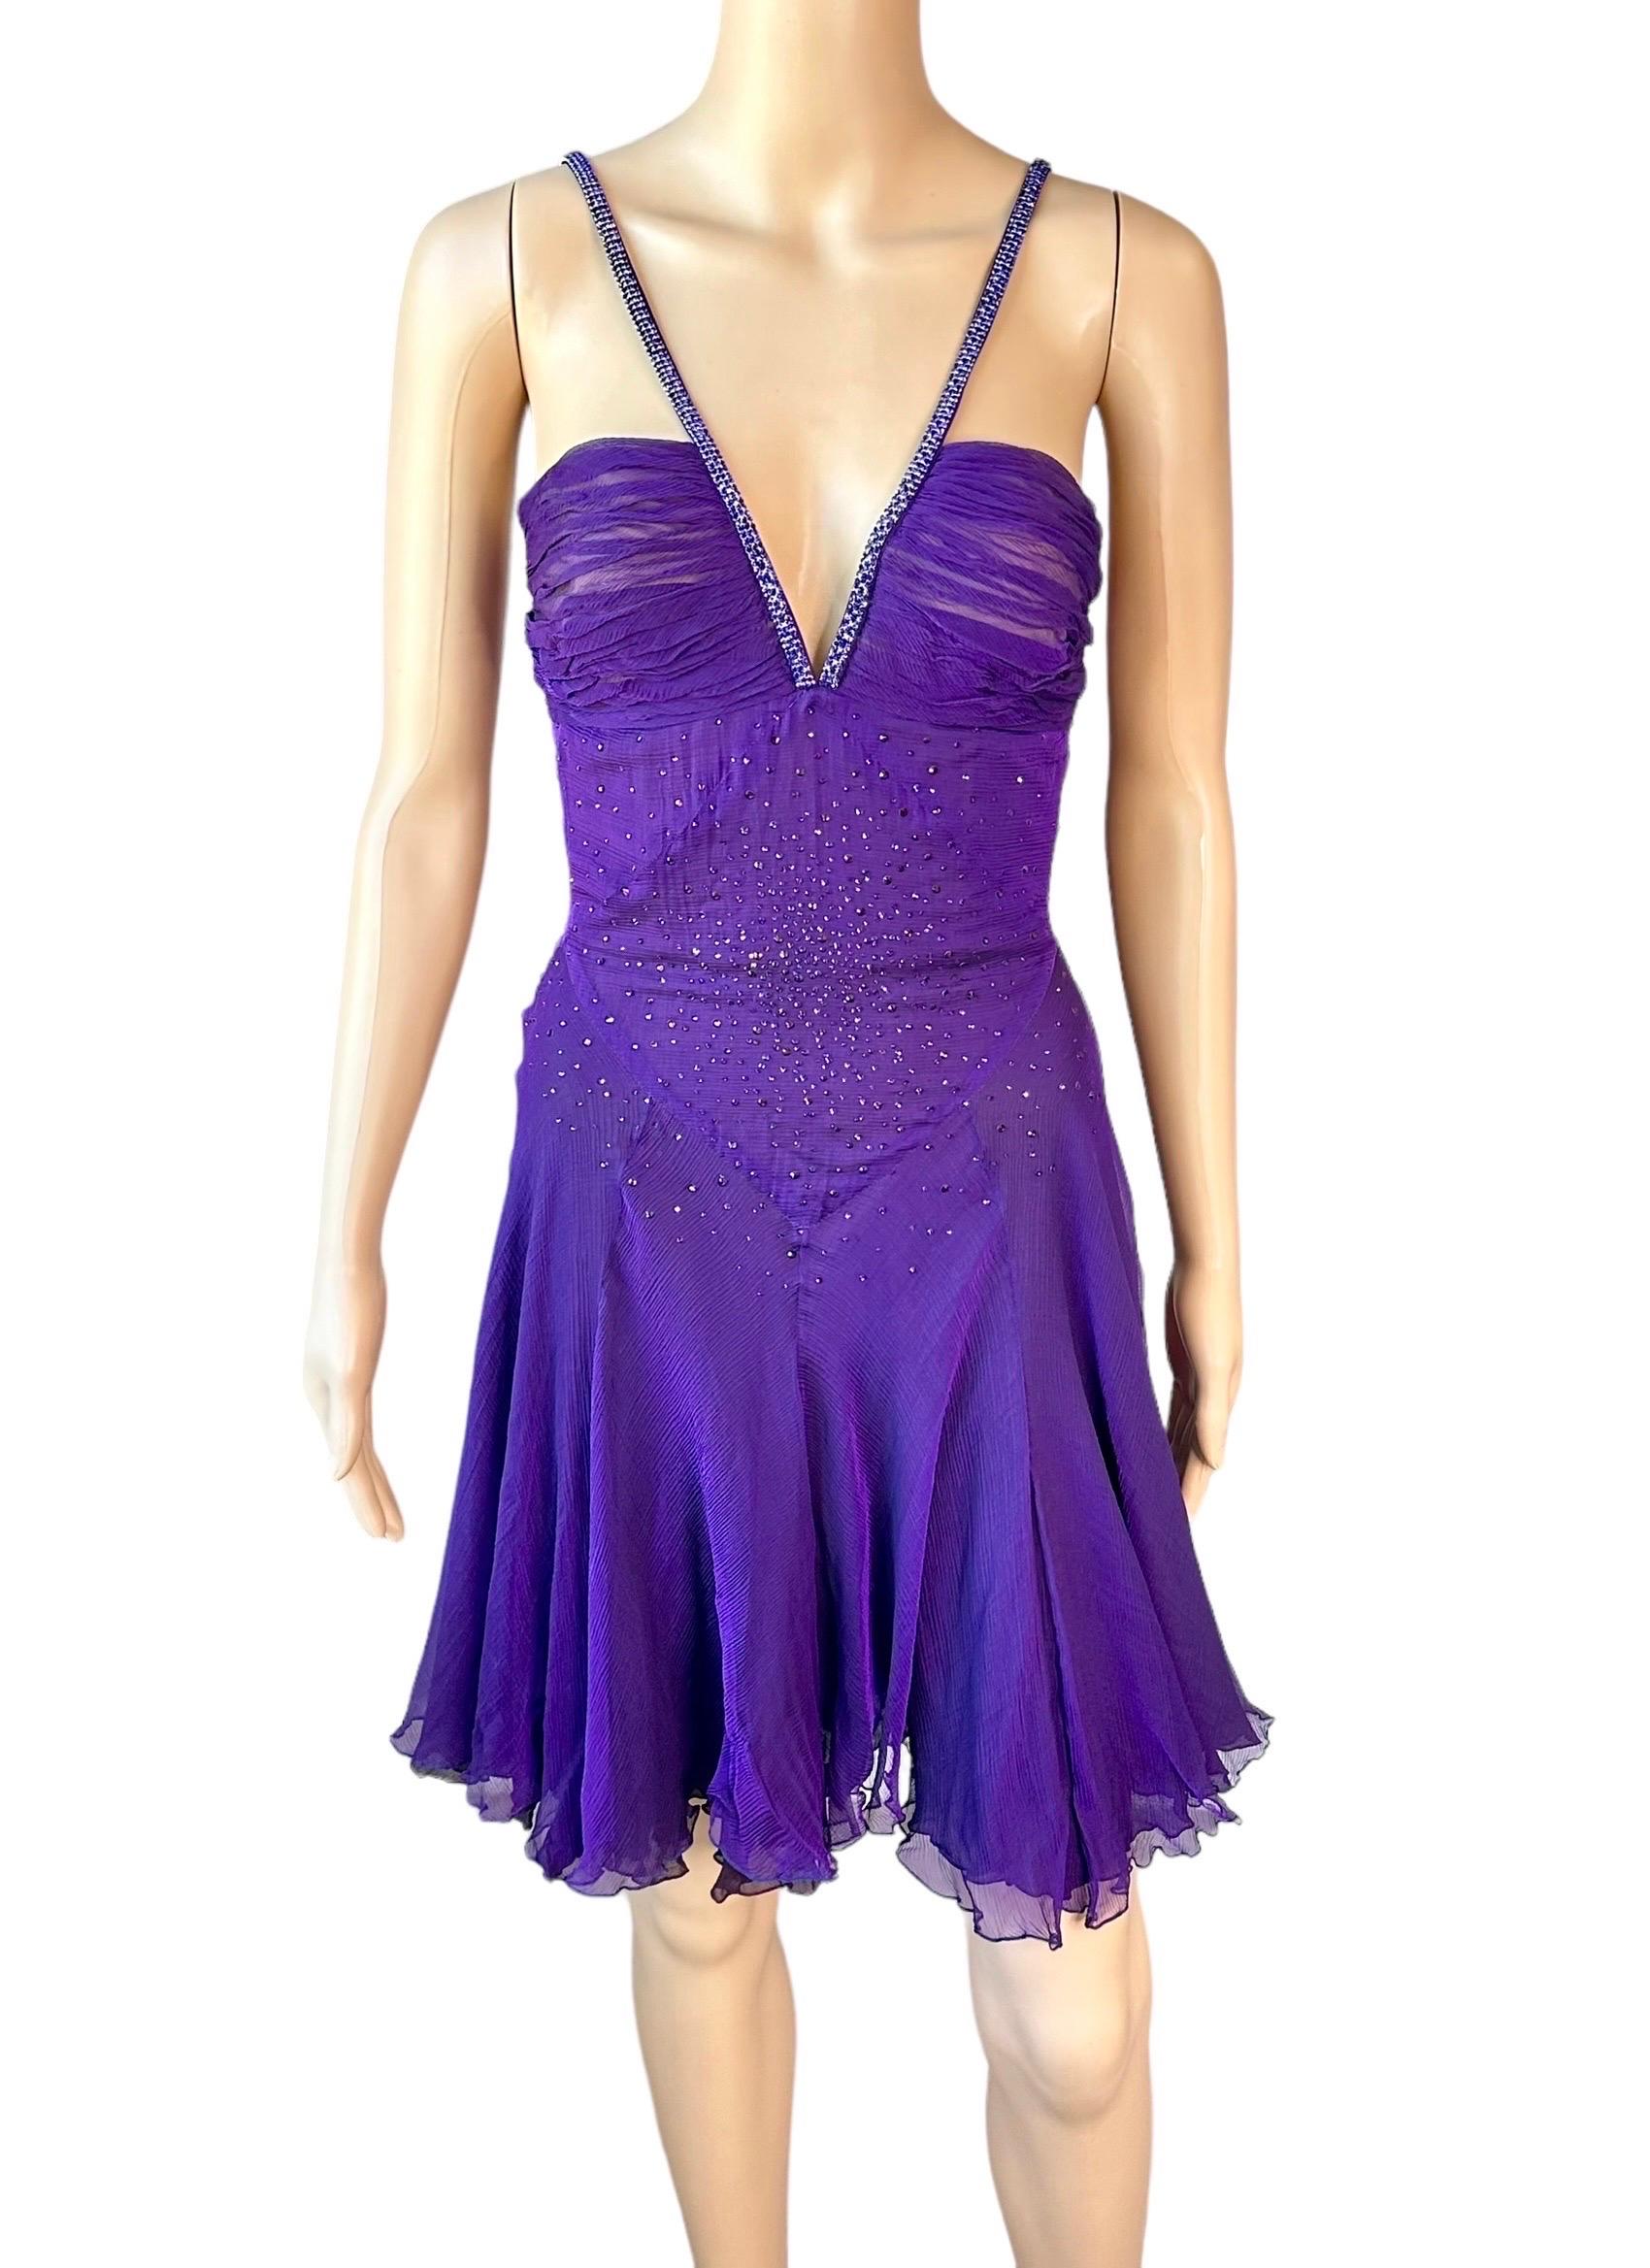 Versace c.2007 Crystal Embellished Plunging Neckline Semi-Sheer Purple Dress For Sale 6